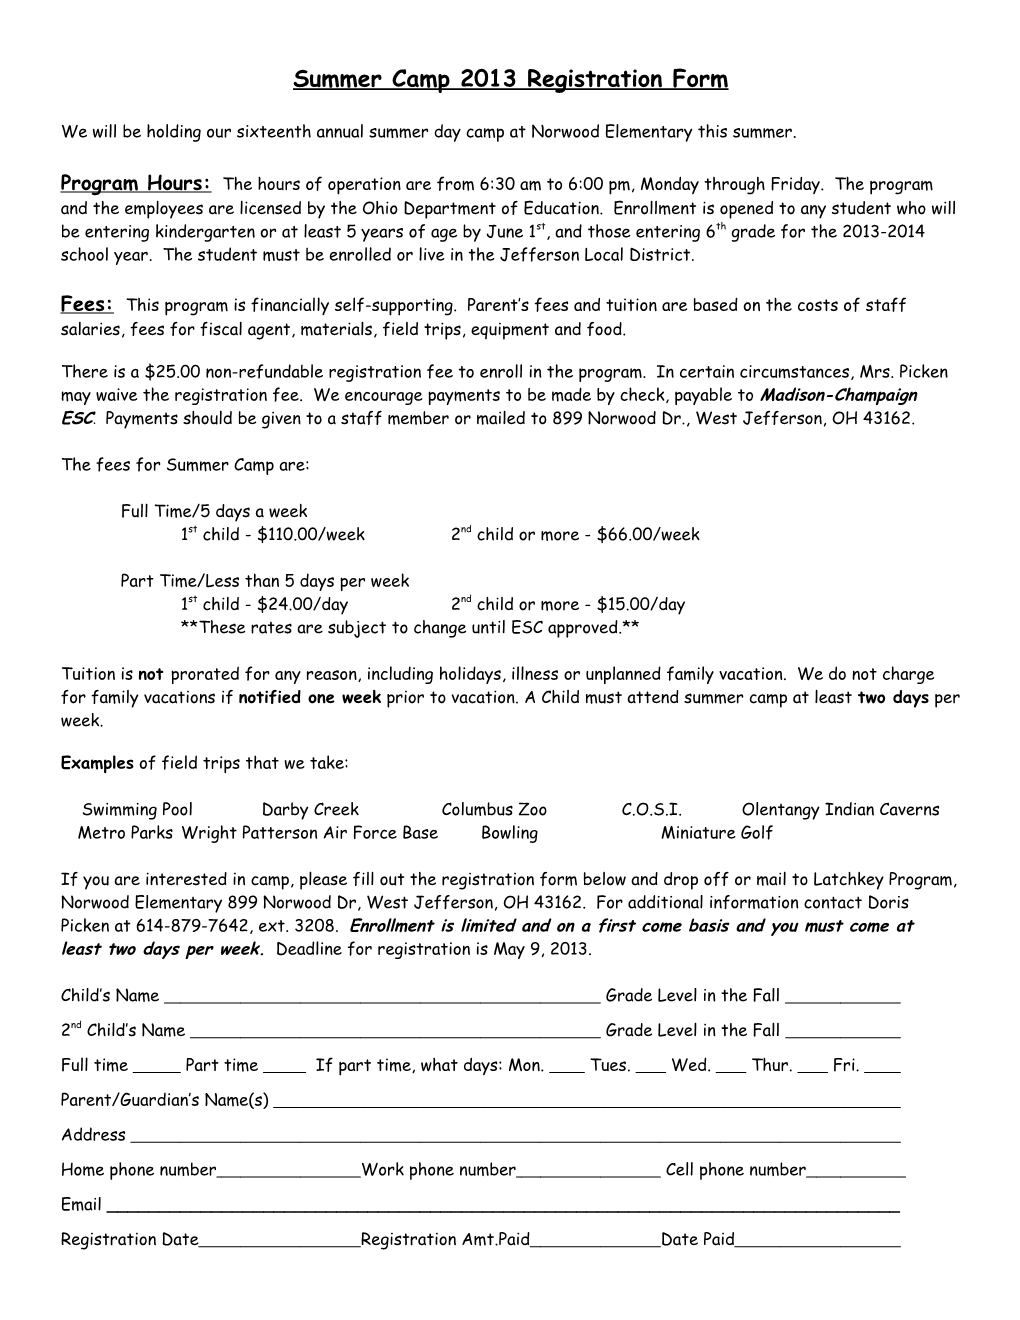 Summer Camp 2005 Registration Form